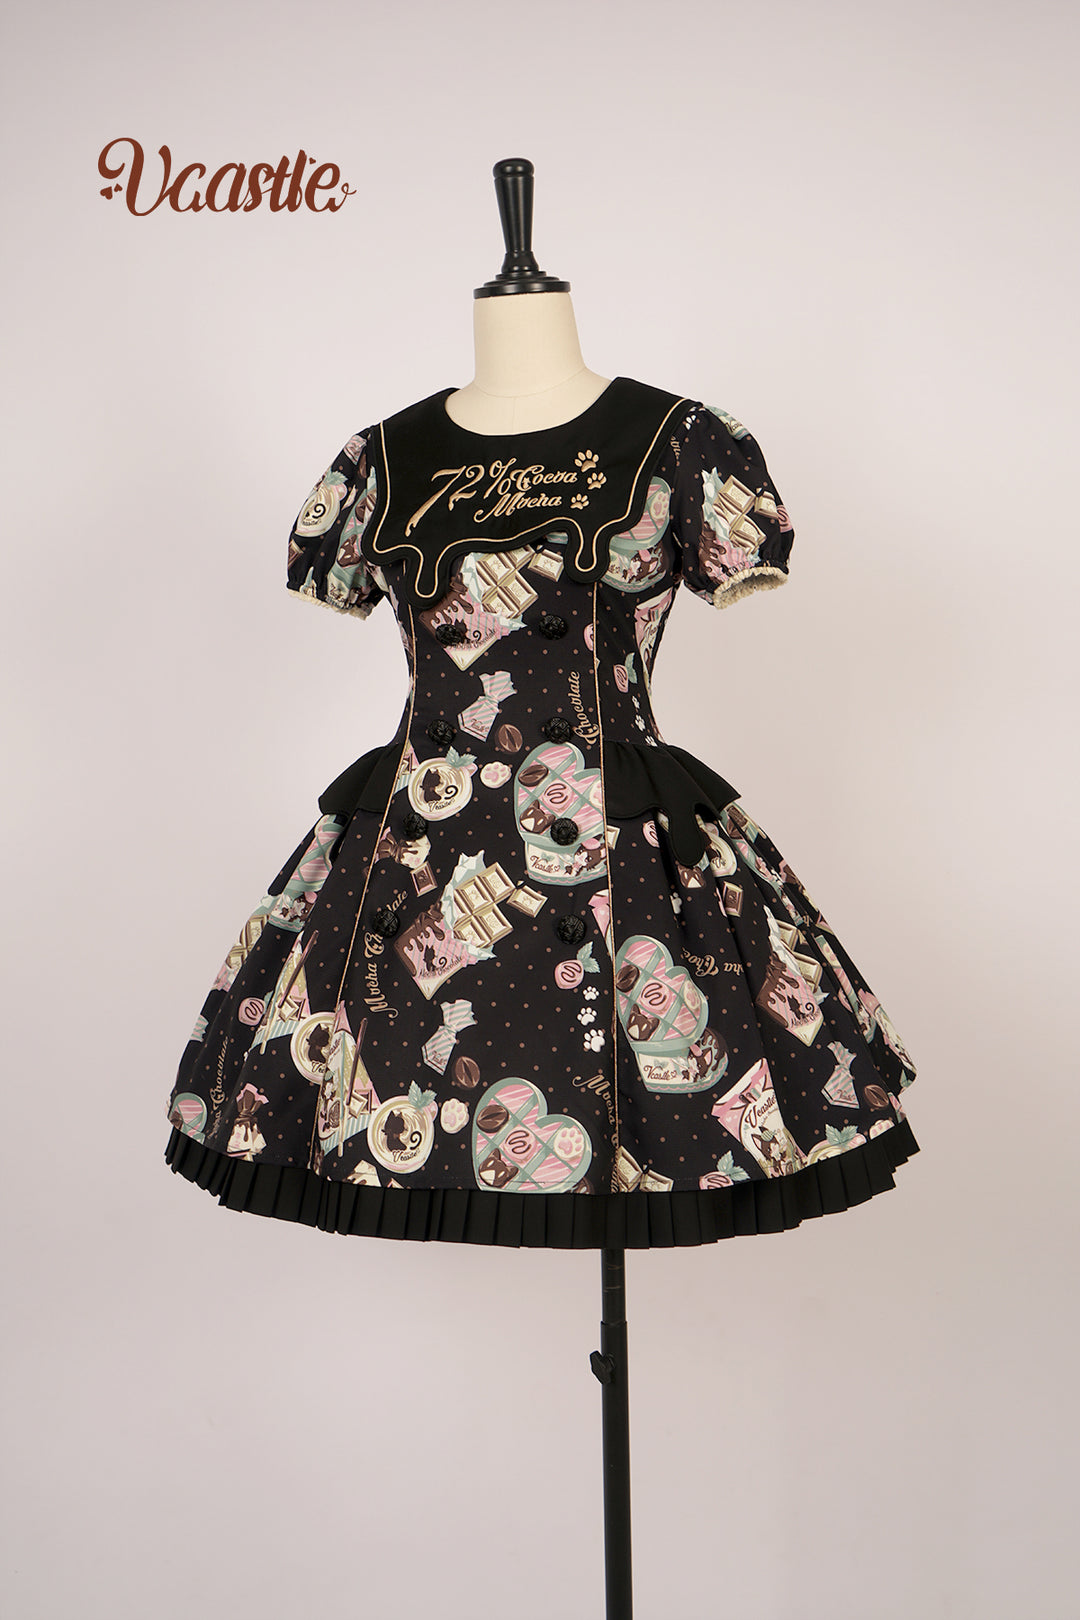 Vcastle~Mocha Choc~Kawaii Lolita Slopette Dress Suit Multicolors S black OP 